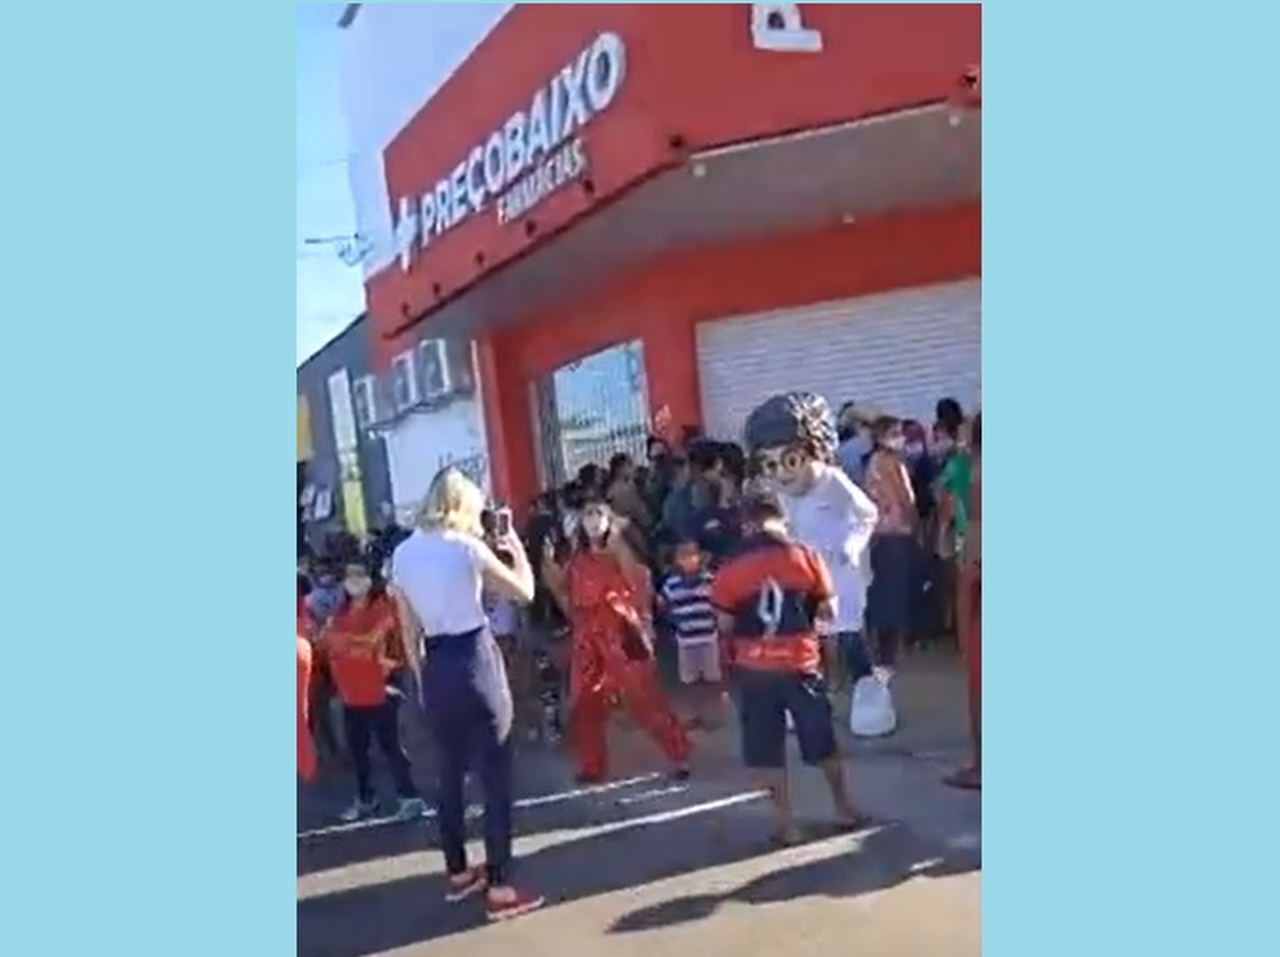 Em Araguaína, farmácia é interditada no dia da inauguração após promover aglomeração com 200 pessoas